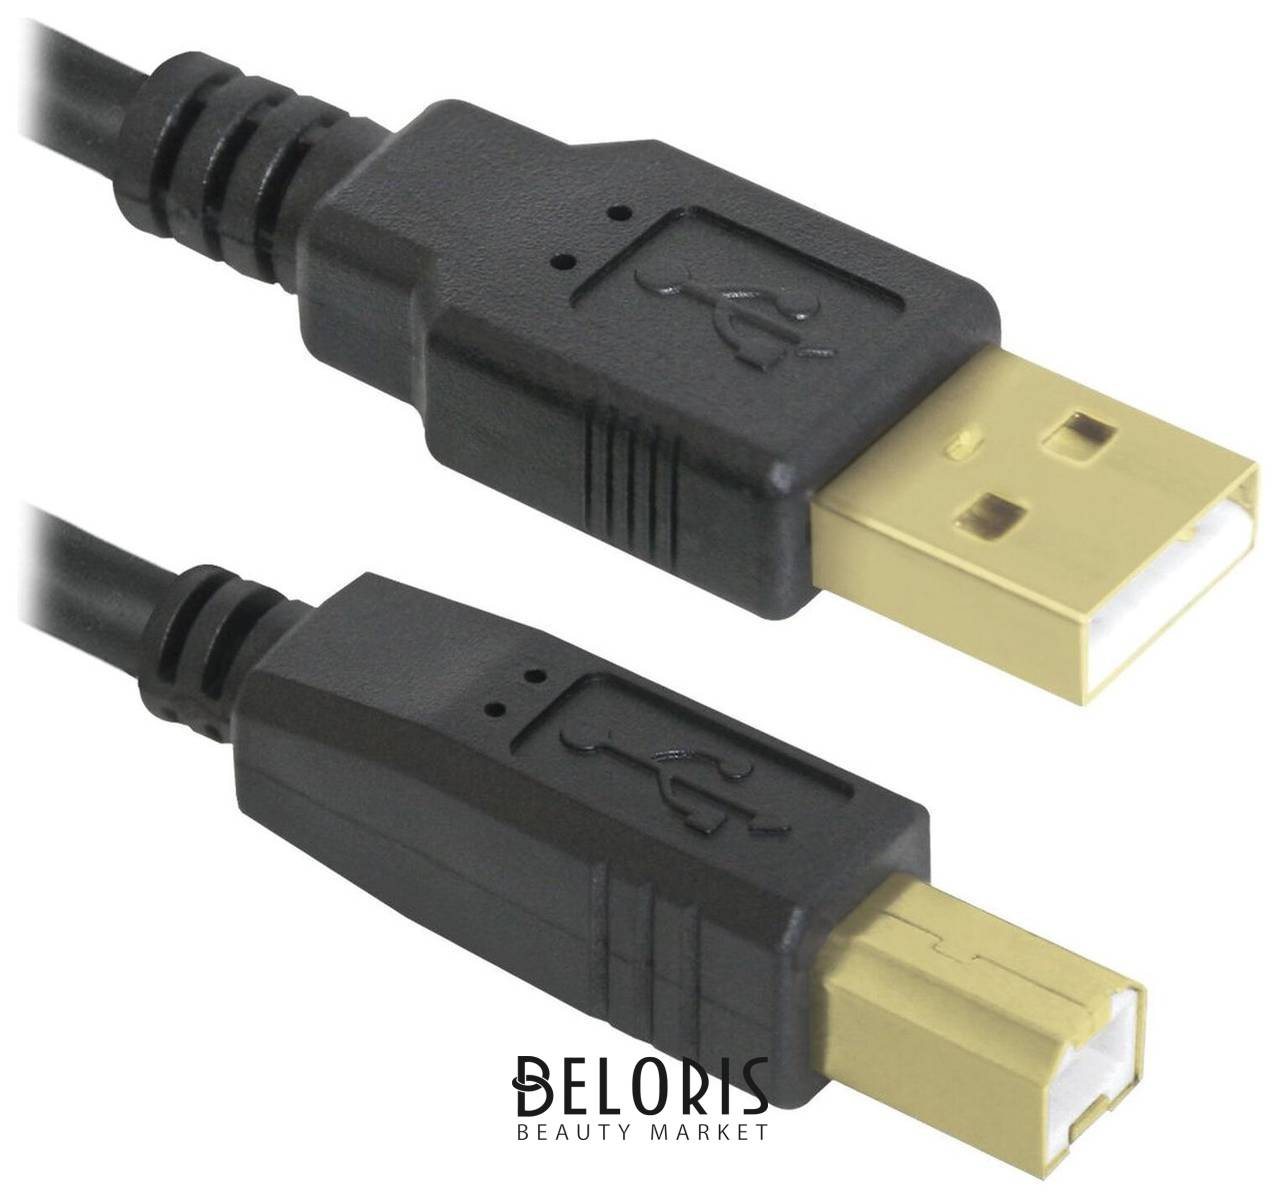 Кабель USB 2.0 Am-bm, 3 м, Defender, 2 фильтра, для подключения принтеров, МФУ и периферии, 87431 Defender